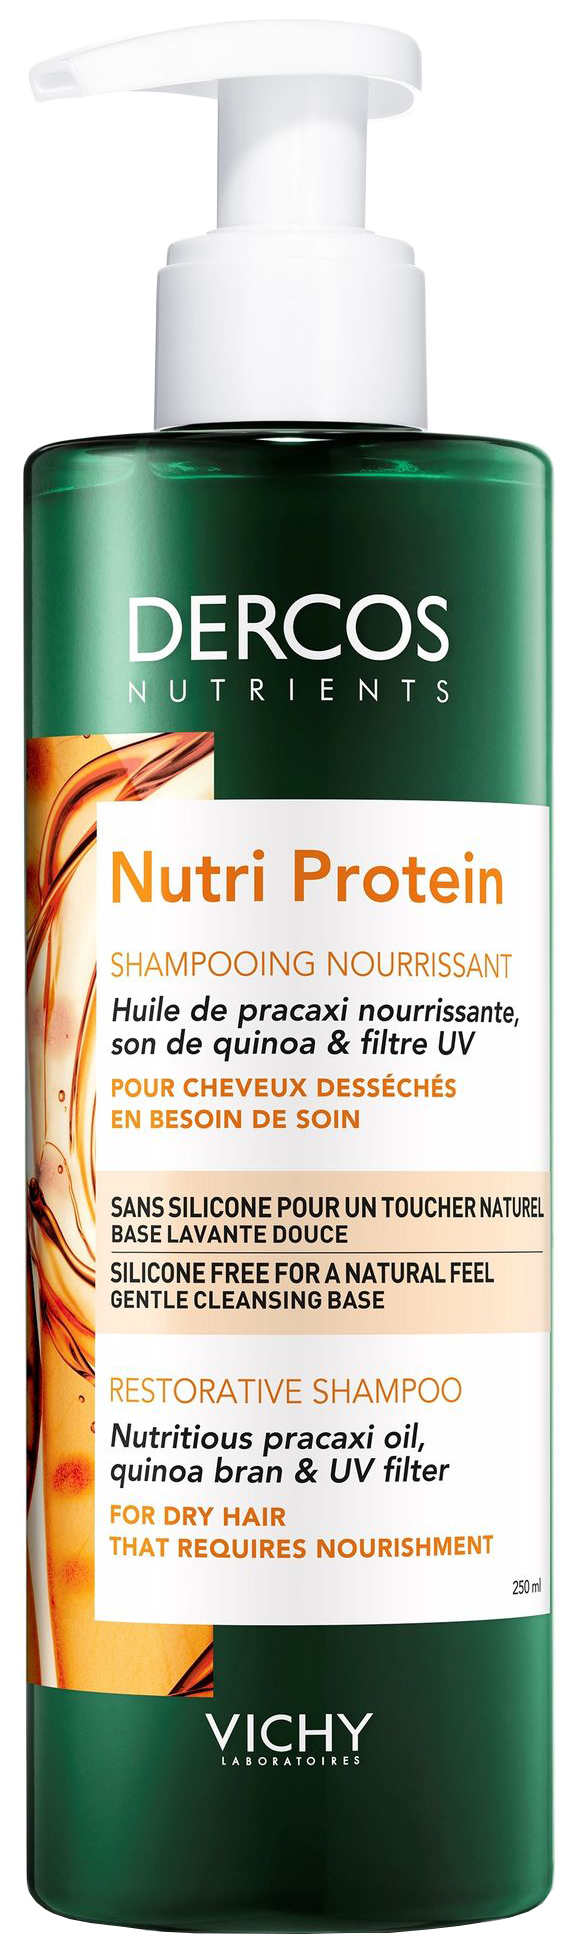 Vichy Dercos Nutrients шампунь для волос нутри протеин восстанавл 250мл